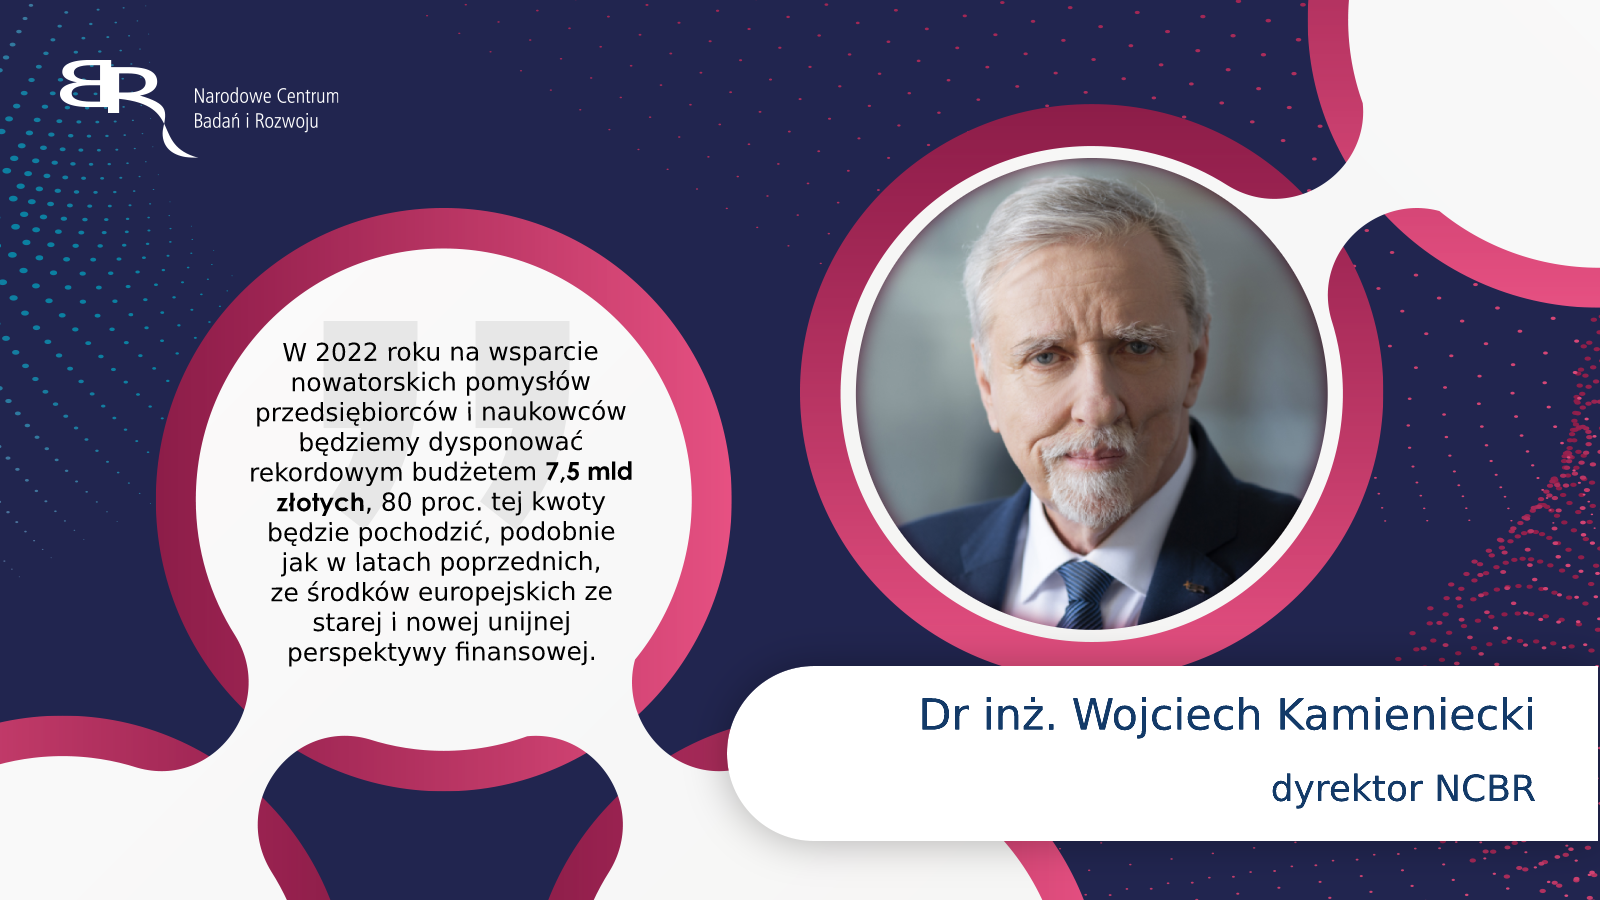 Dr inż. Wojciech Kamieniecki - dyrektor NCBR